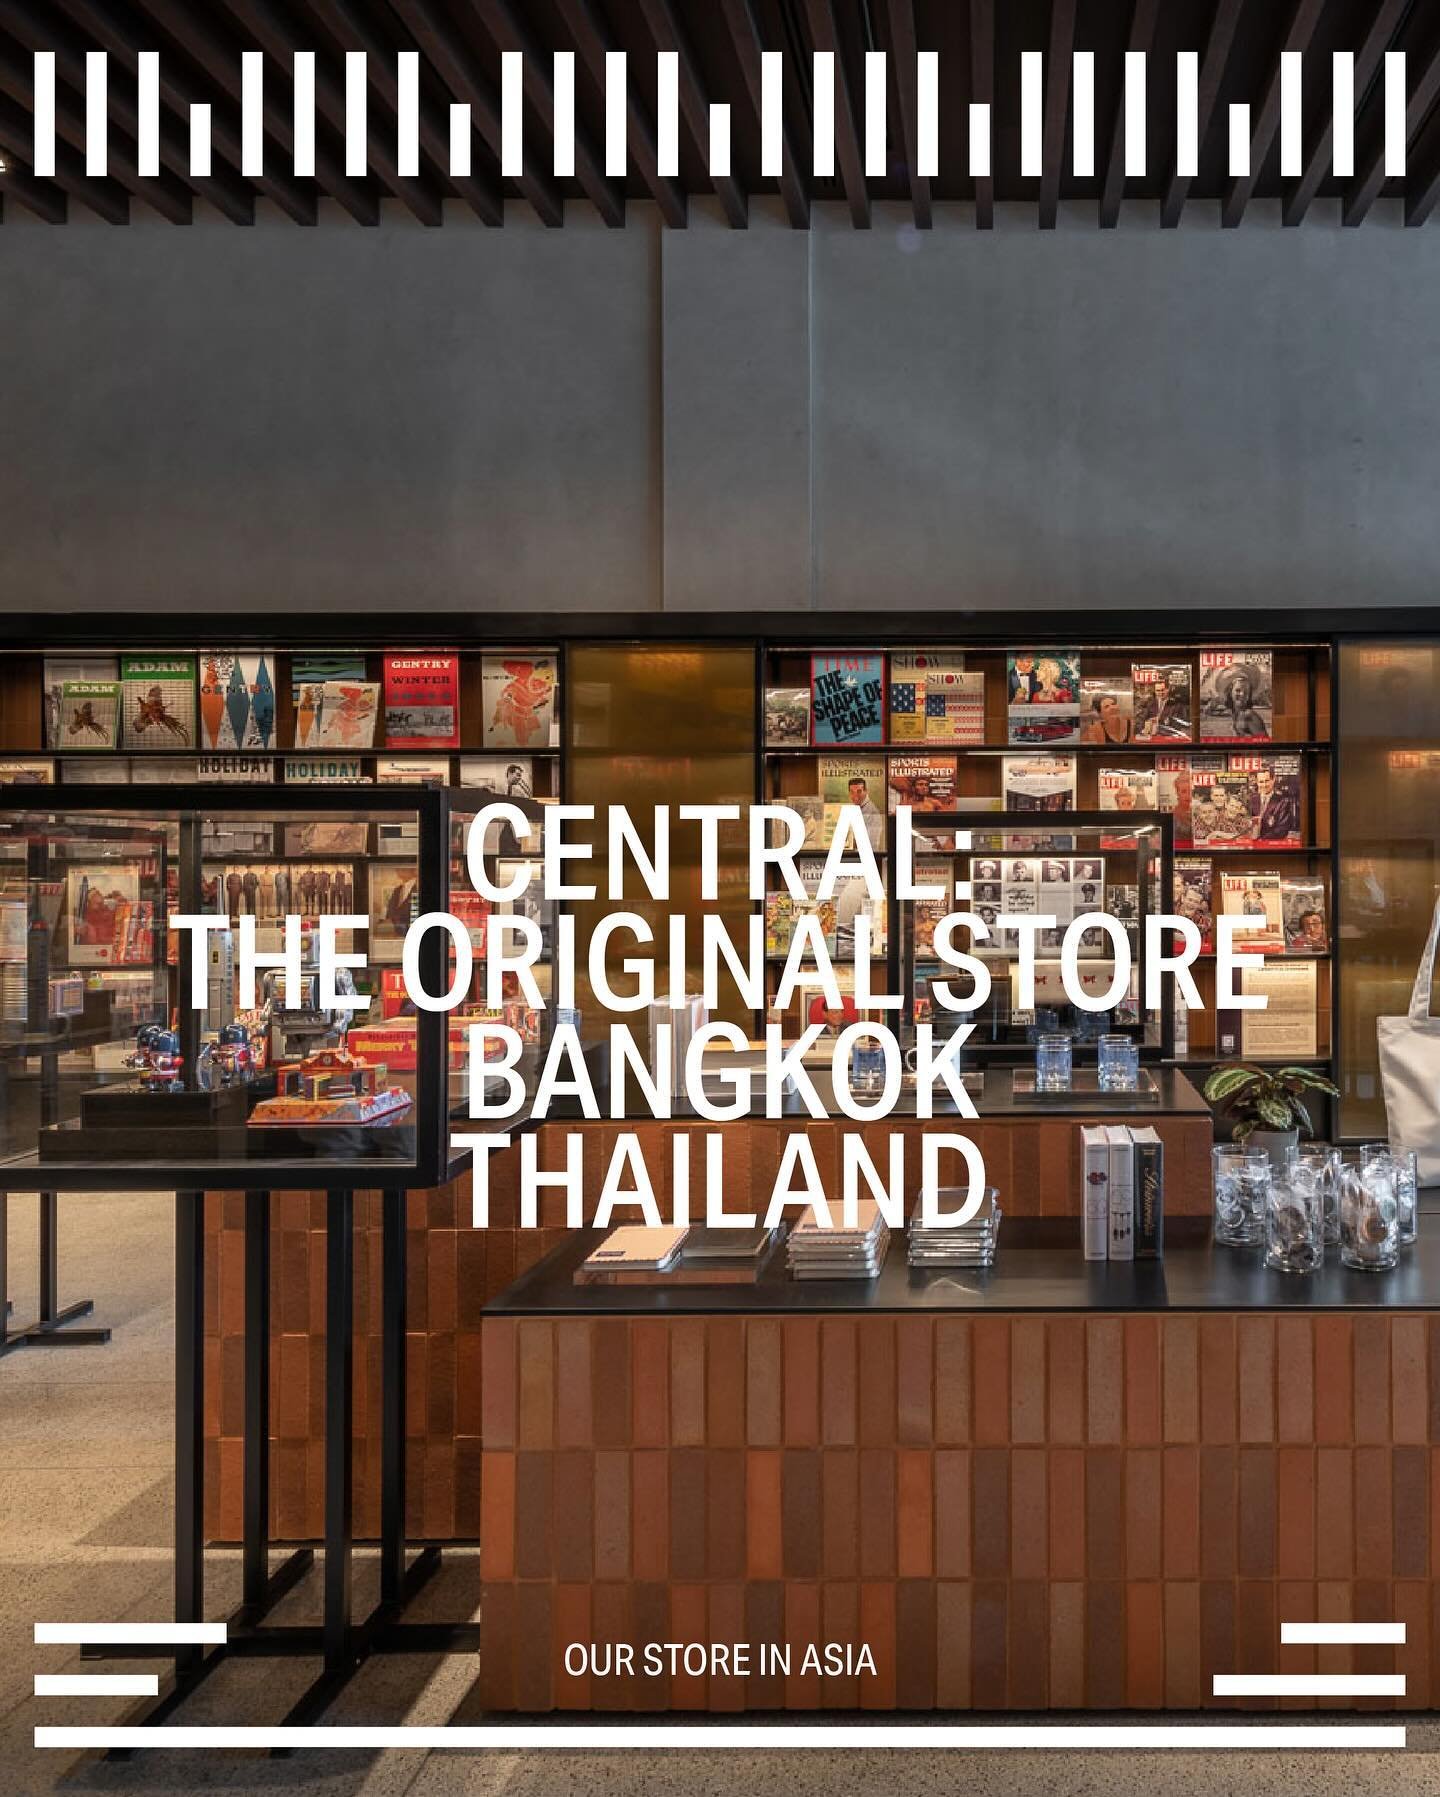 방콕의 또 다른 입점처 Central: The Original Store를 소개합니다. 태국의 기업 Central Trading의 시작을 상징하는 곳으로 방콕의 라이프스타일, 헤리티지, 문화의 변화를 반영하는 곳입니다. 1950년대 방콕의 중심이었던 챠로엔 크룽에 위치하고 있습니다. Things In City의 마지막 재고와 Closing Ceremony 시리즈를 만날 수 있습니다.

One of our two stores in Bangkok,